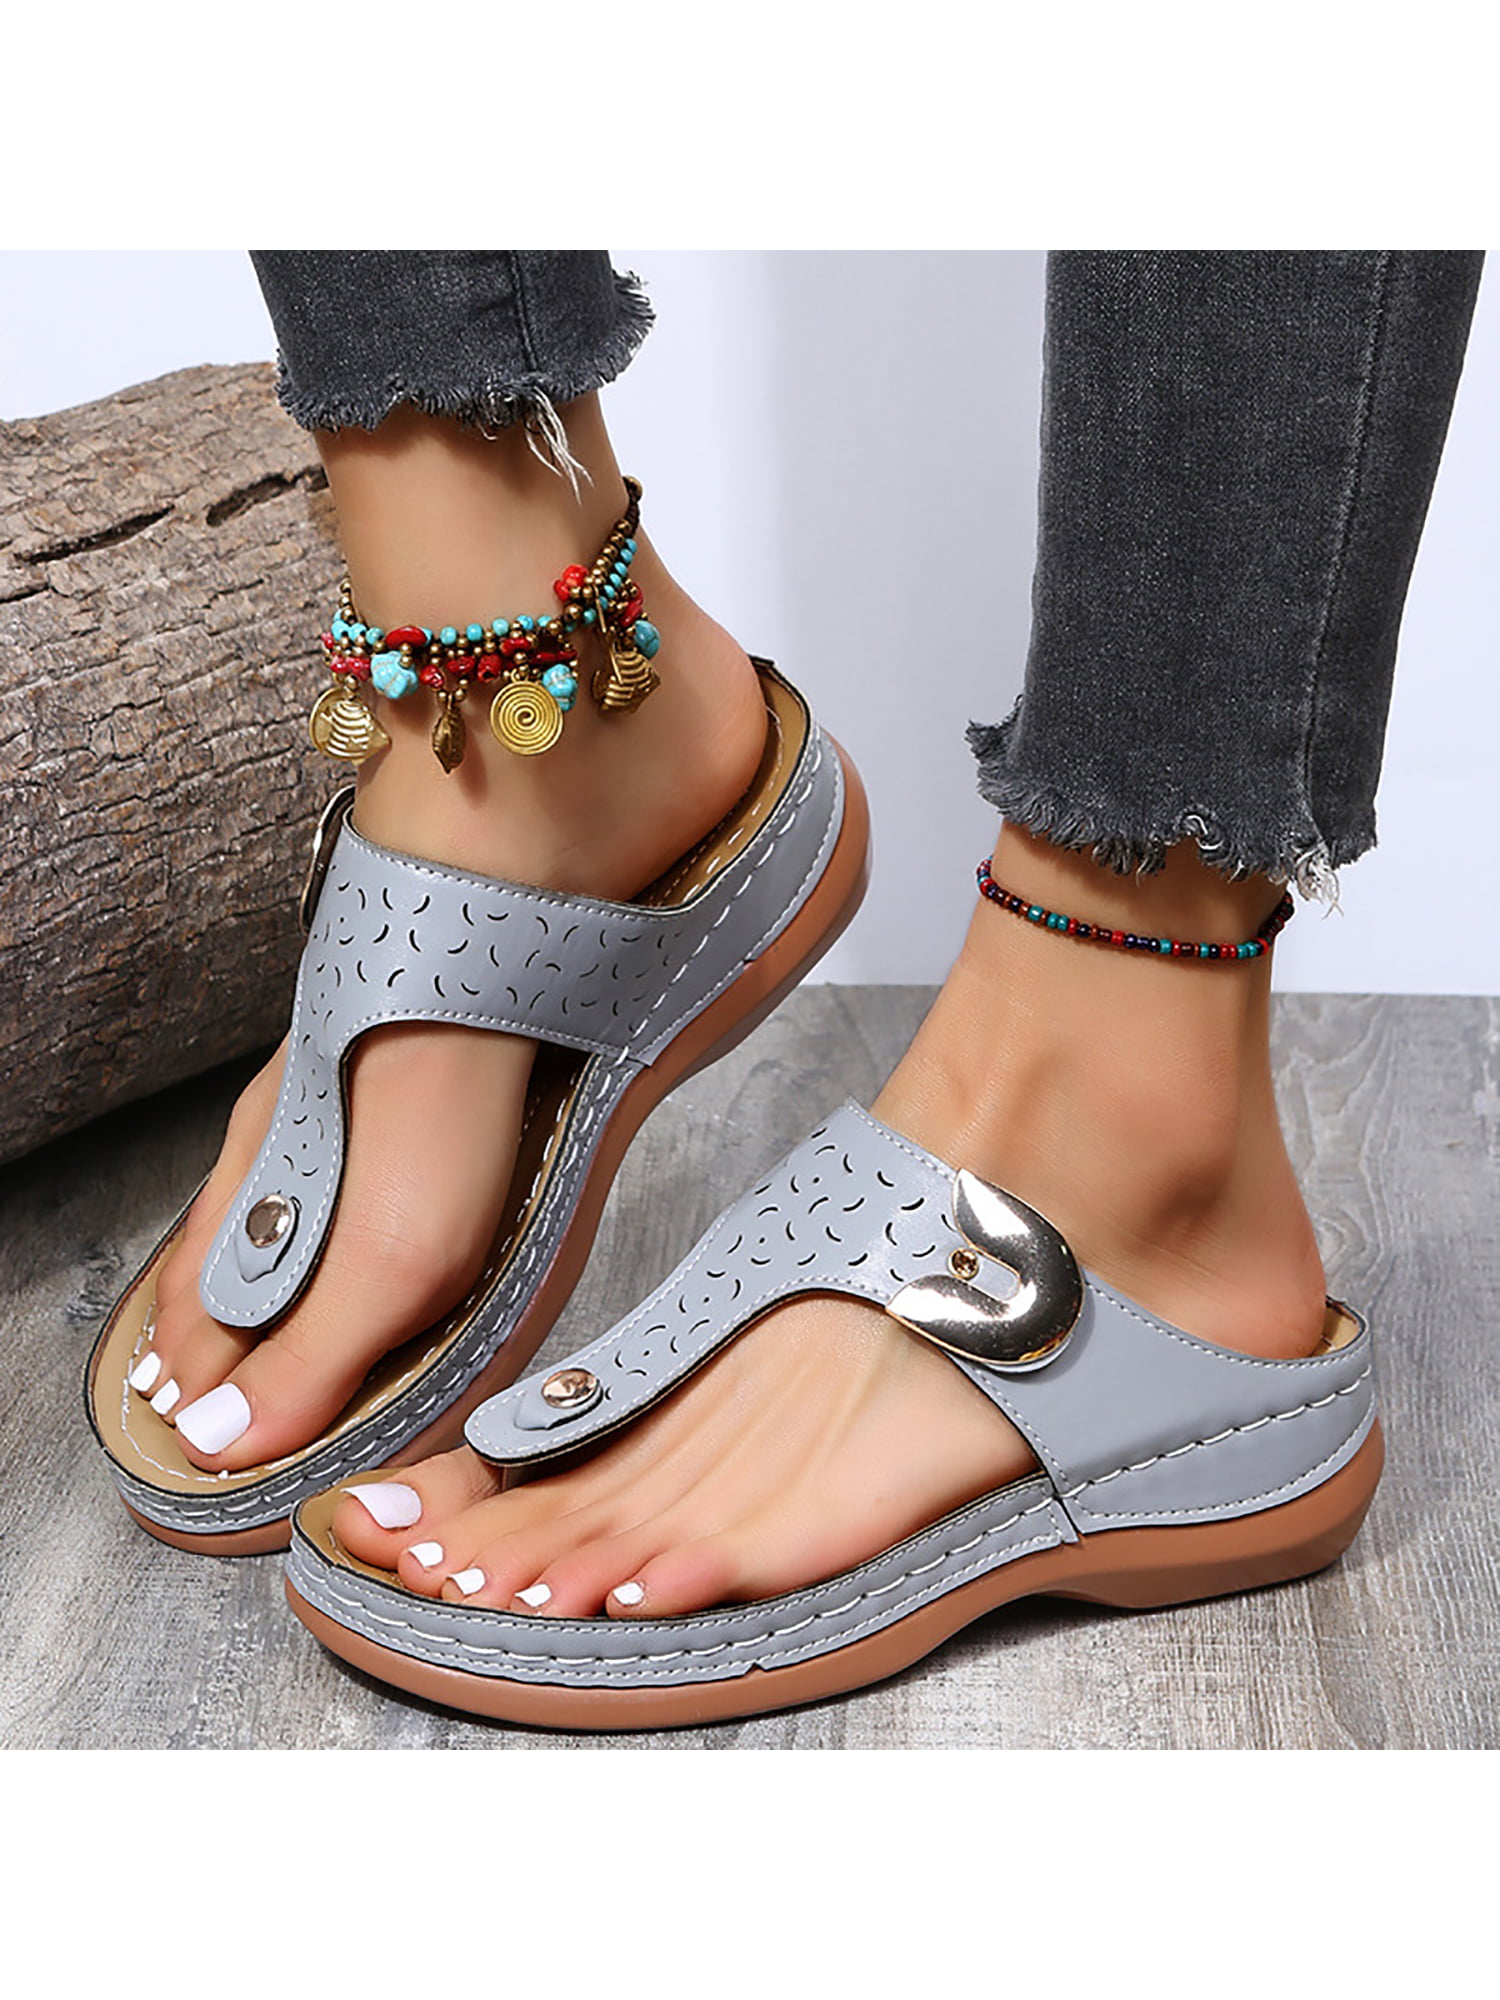 Women Summer Beach Casual Flat Platform Thong Flip Flops Sandals Slipper Shoes 